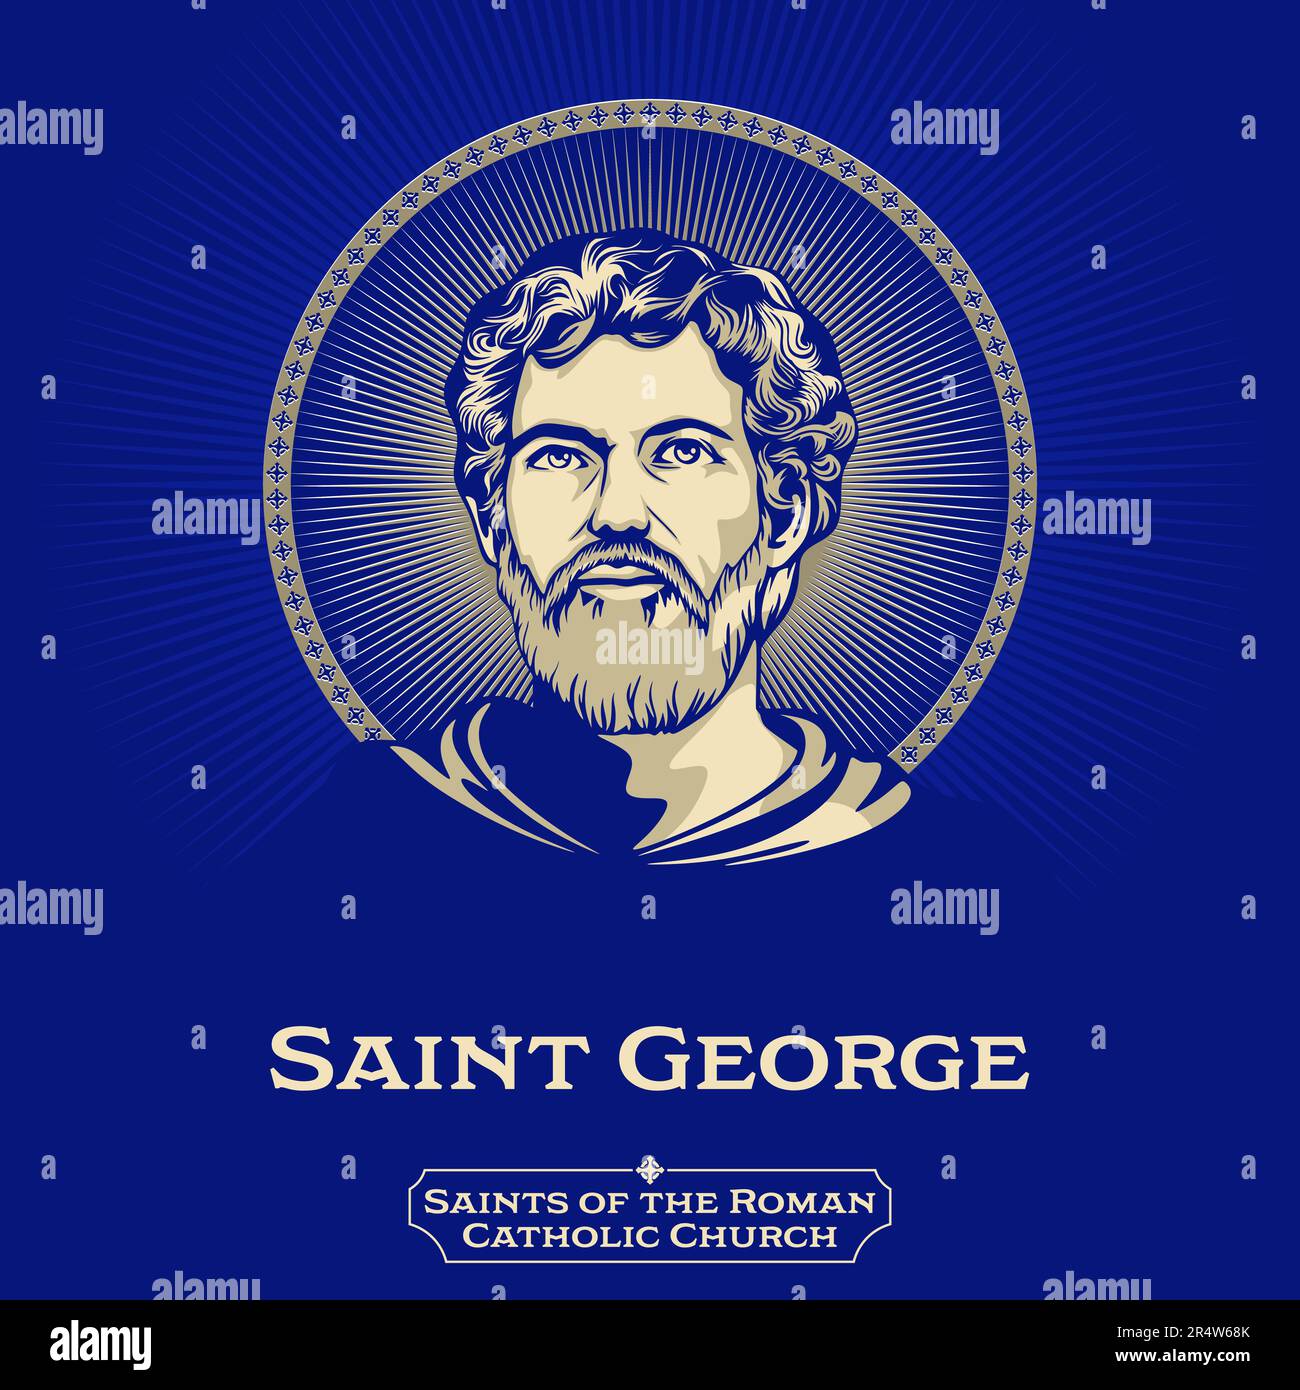 Saints catholiques. Saint George (275-303) était un soldat de l'Empire romain qui devint plus tard un martyr chrétien. Illustration de Vecteur